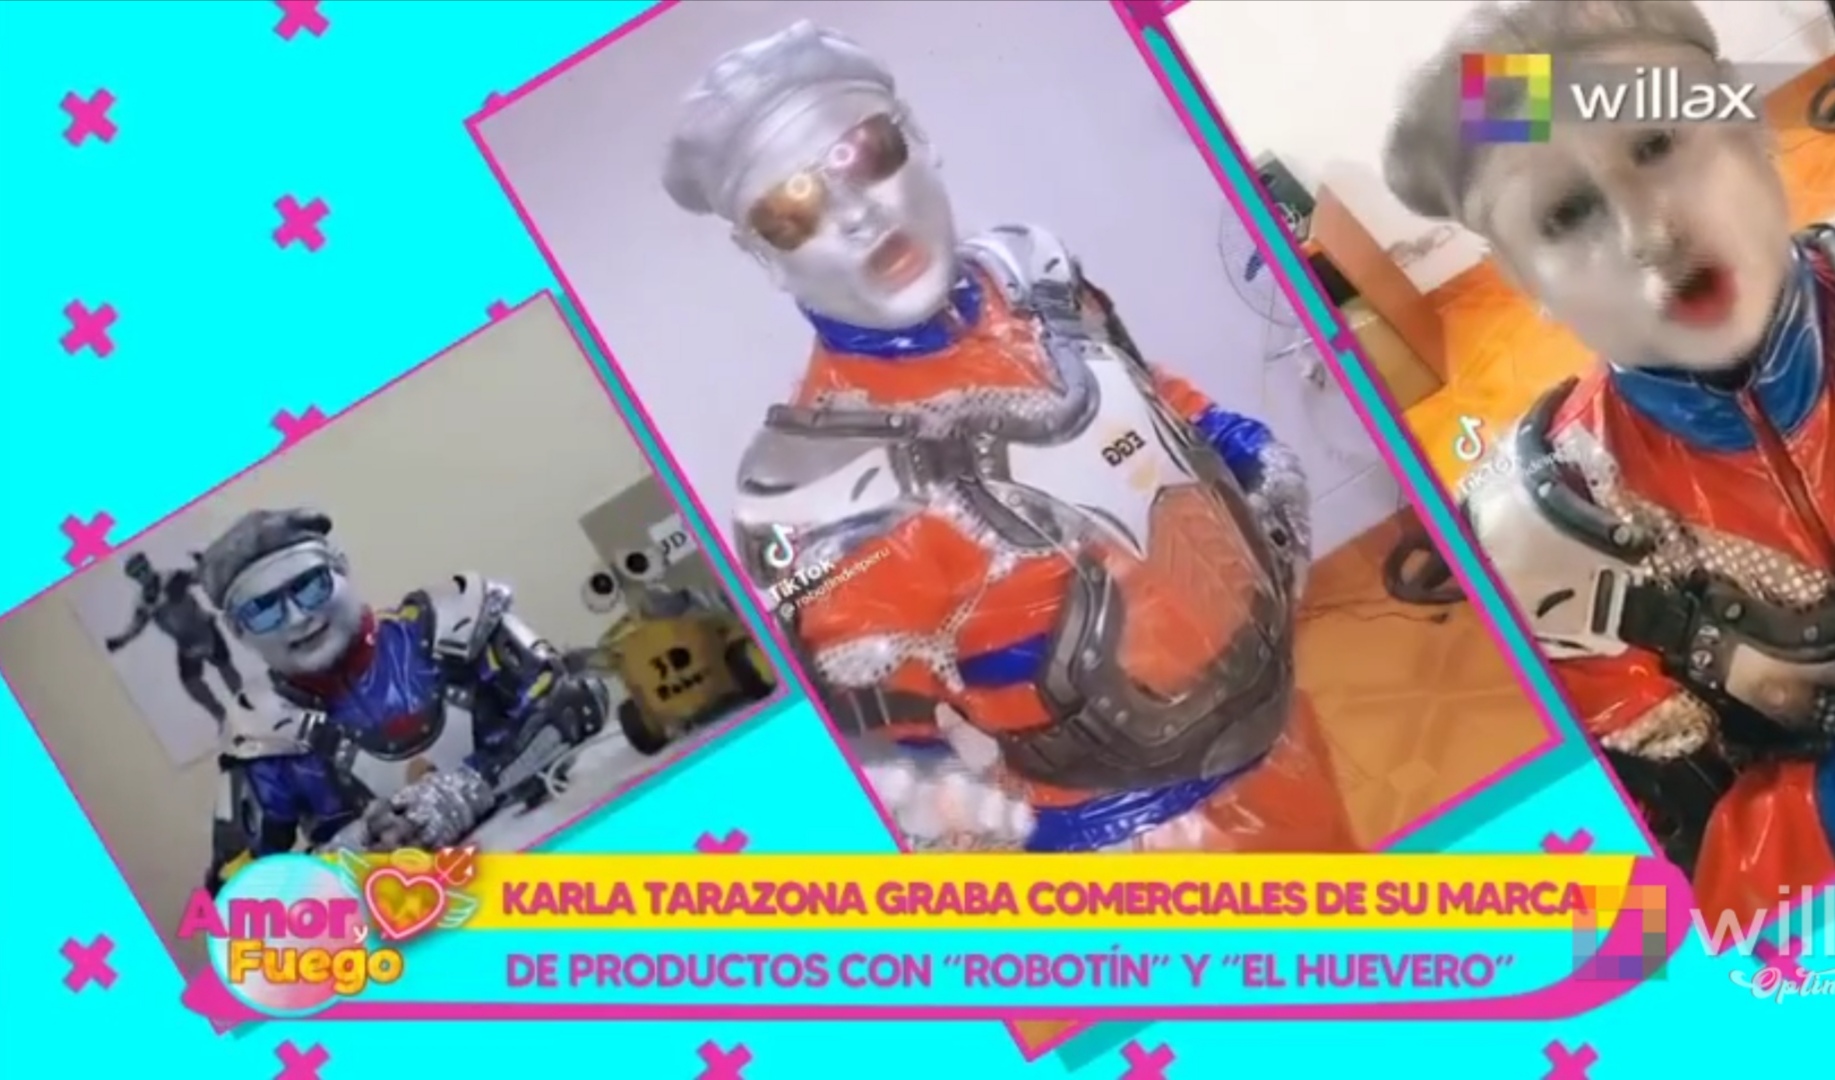 Amor y Fuego: Karla Tarazona graba comerciales de su marca de productos con “Robotín”